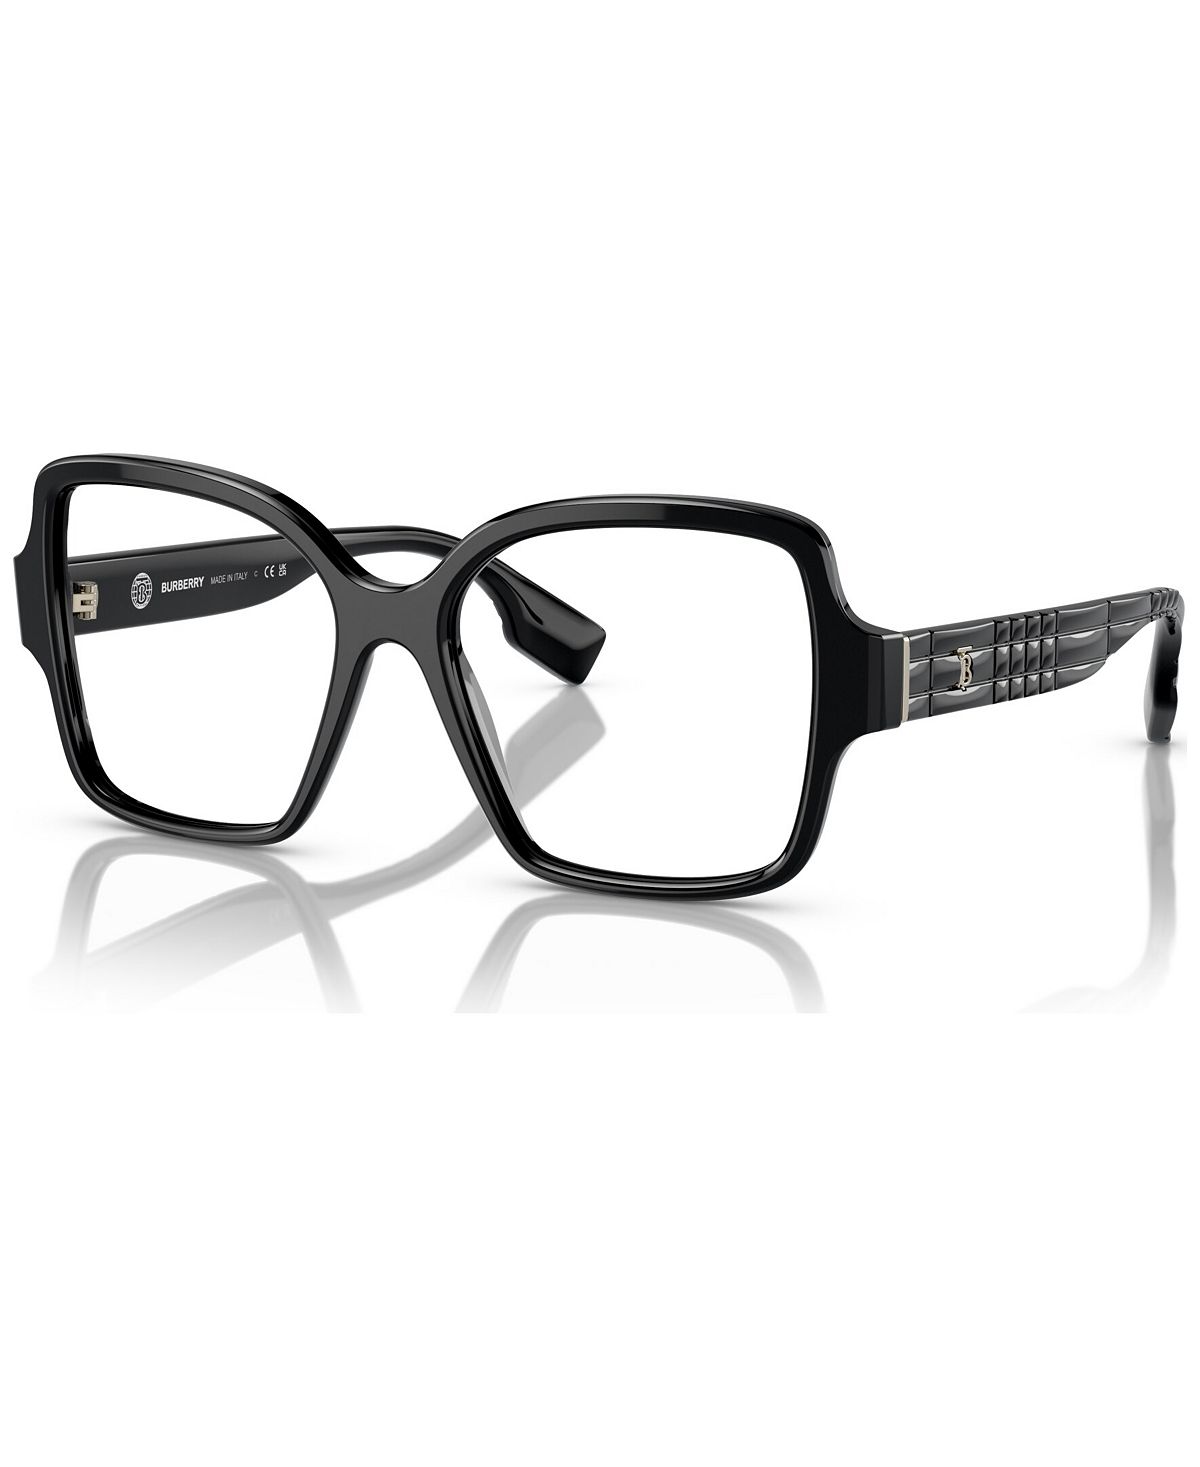 Женские квадратные очки, BE2374 52 Burberry, черный женские квадратные очки be2376 52 burberry черный